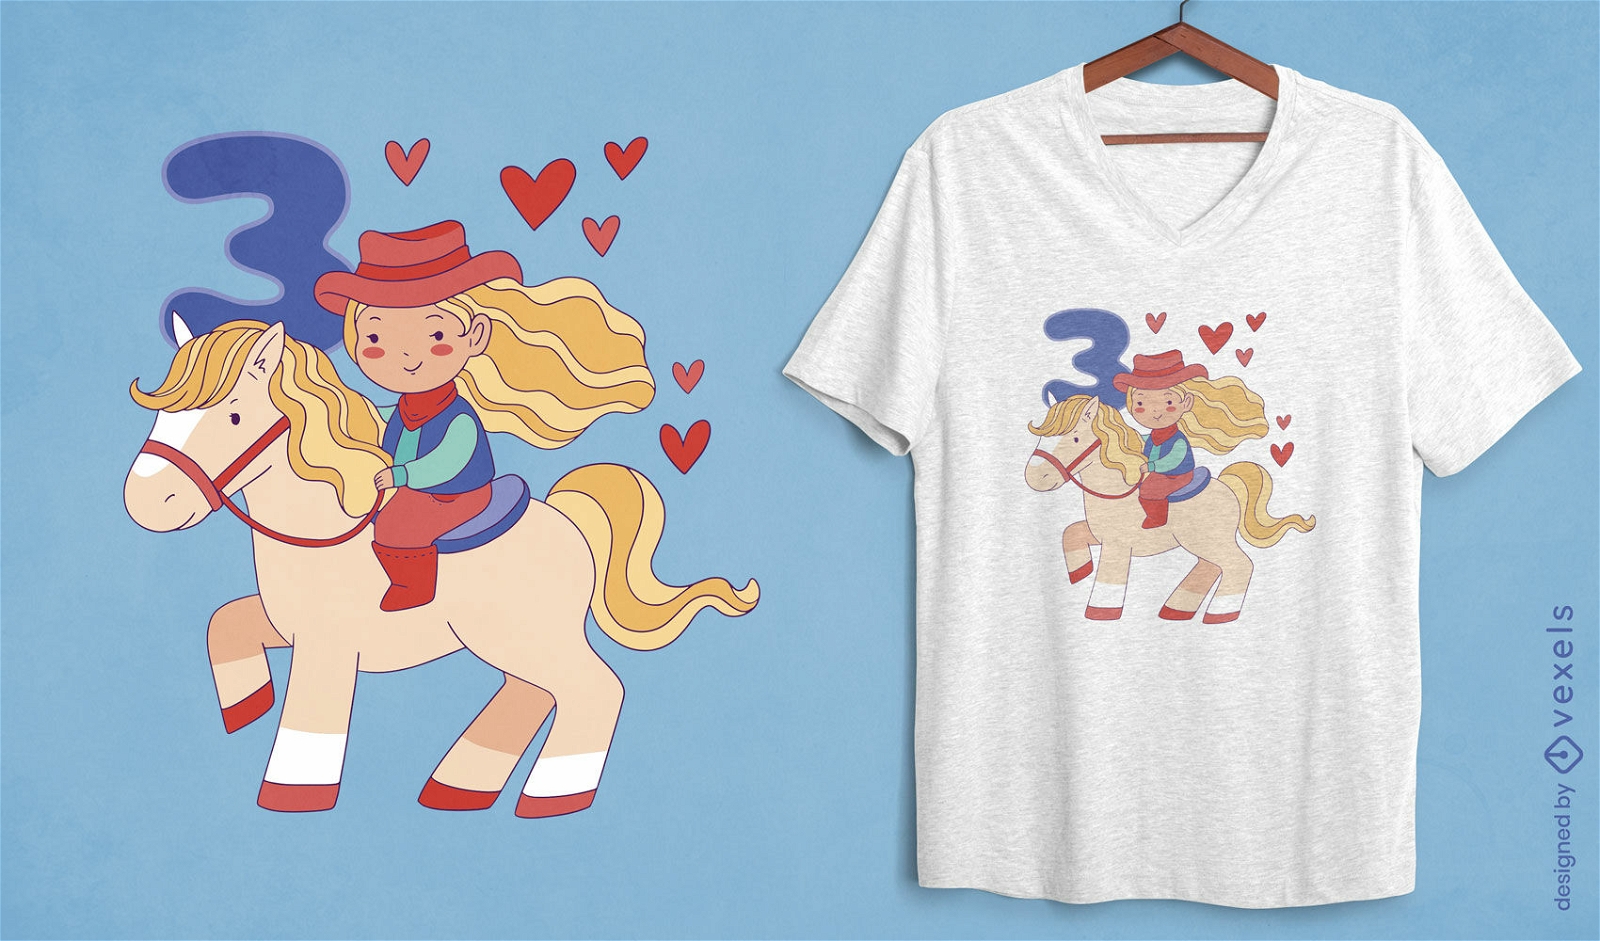 Garota cowboy em um design de camiseta de cavalo